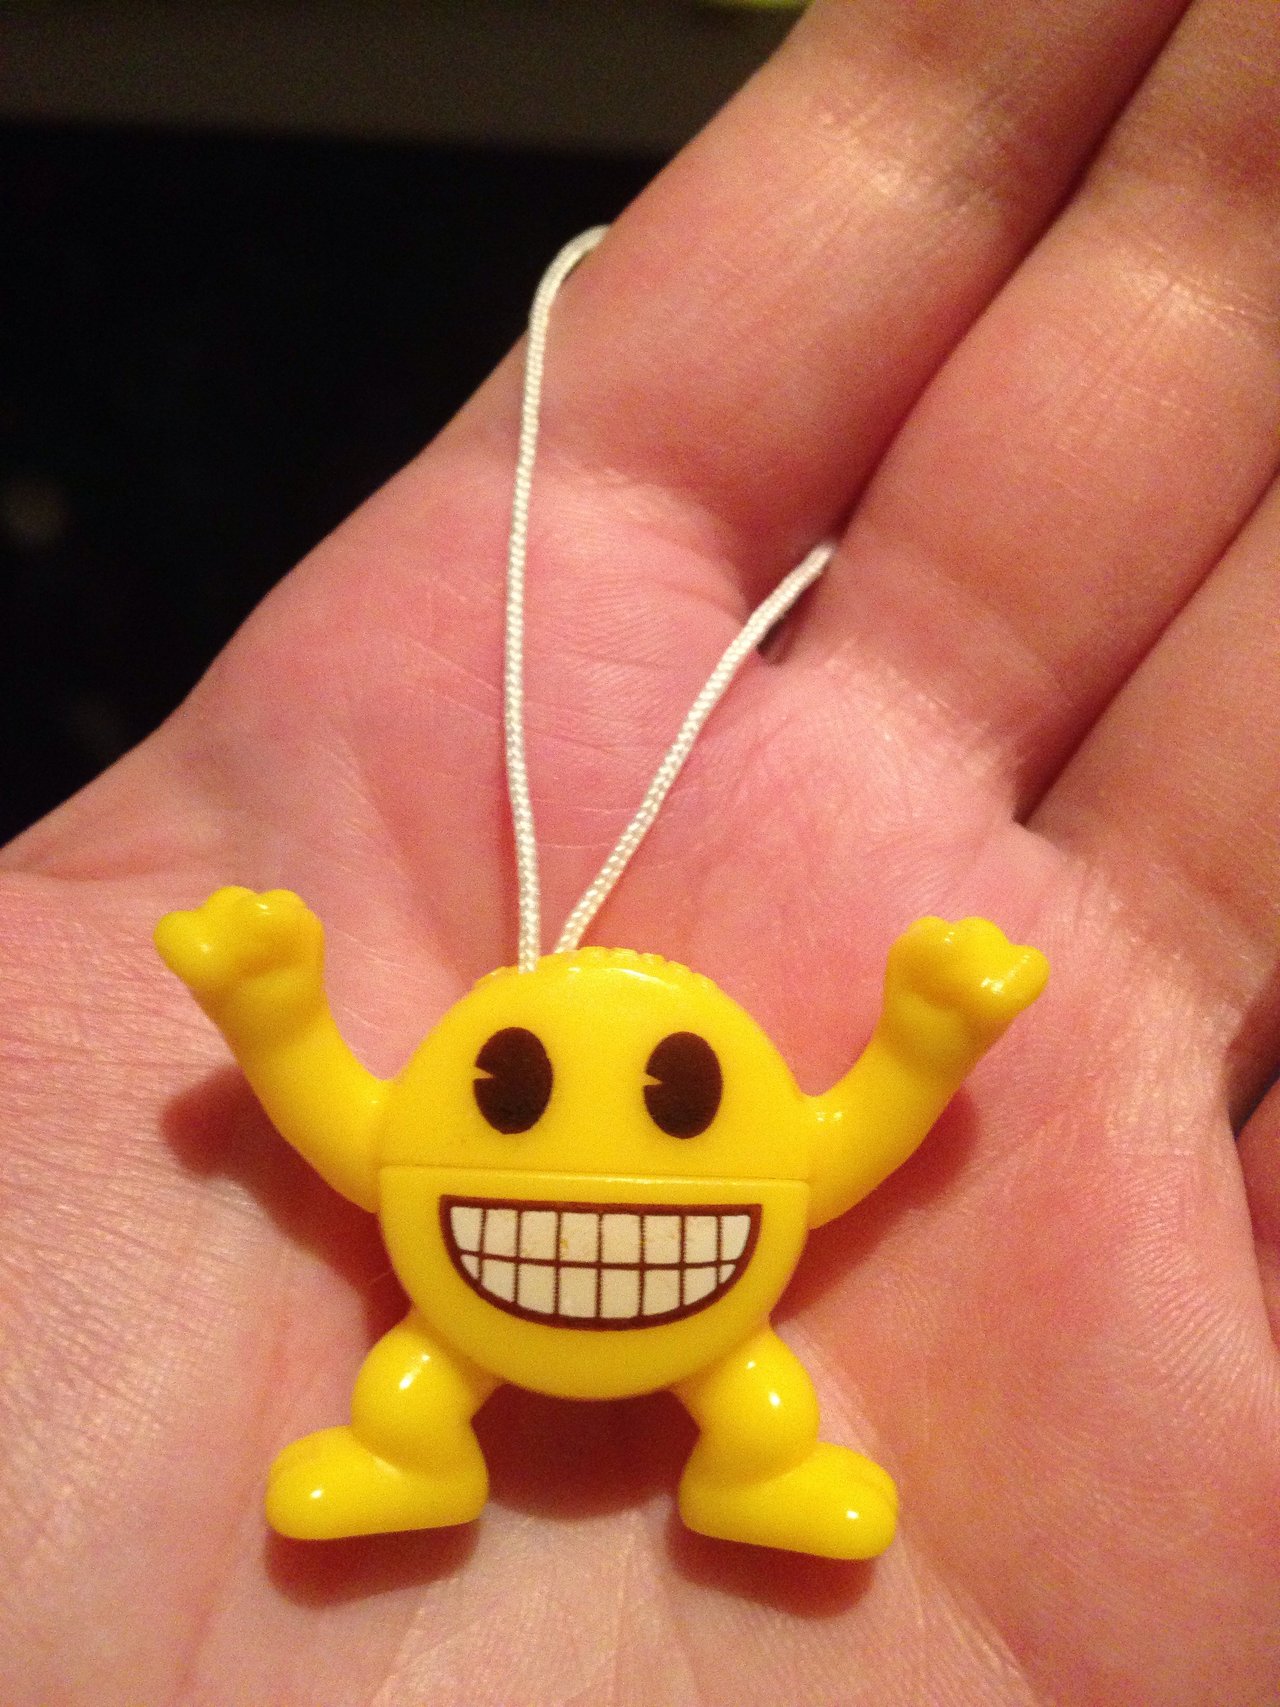 Našla som v Kinderku smajlíka! :D Pamätníci poďme sa porozprávať o hračkách z Kinderka! :) 